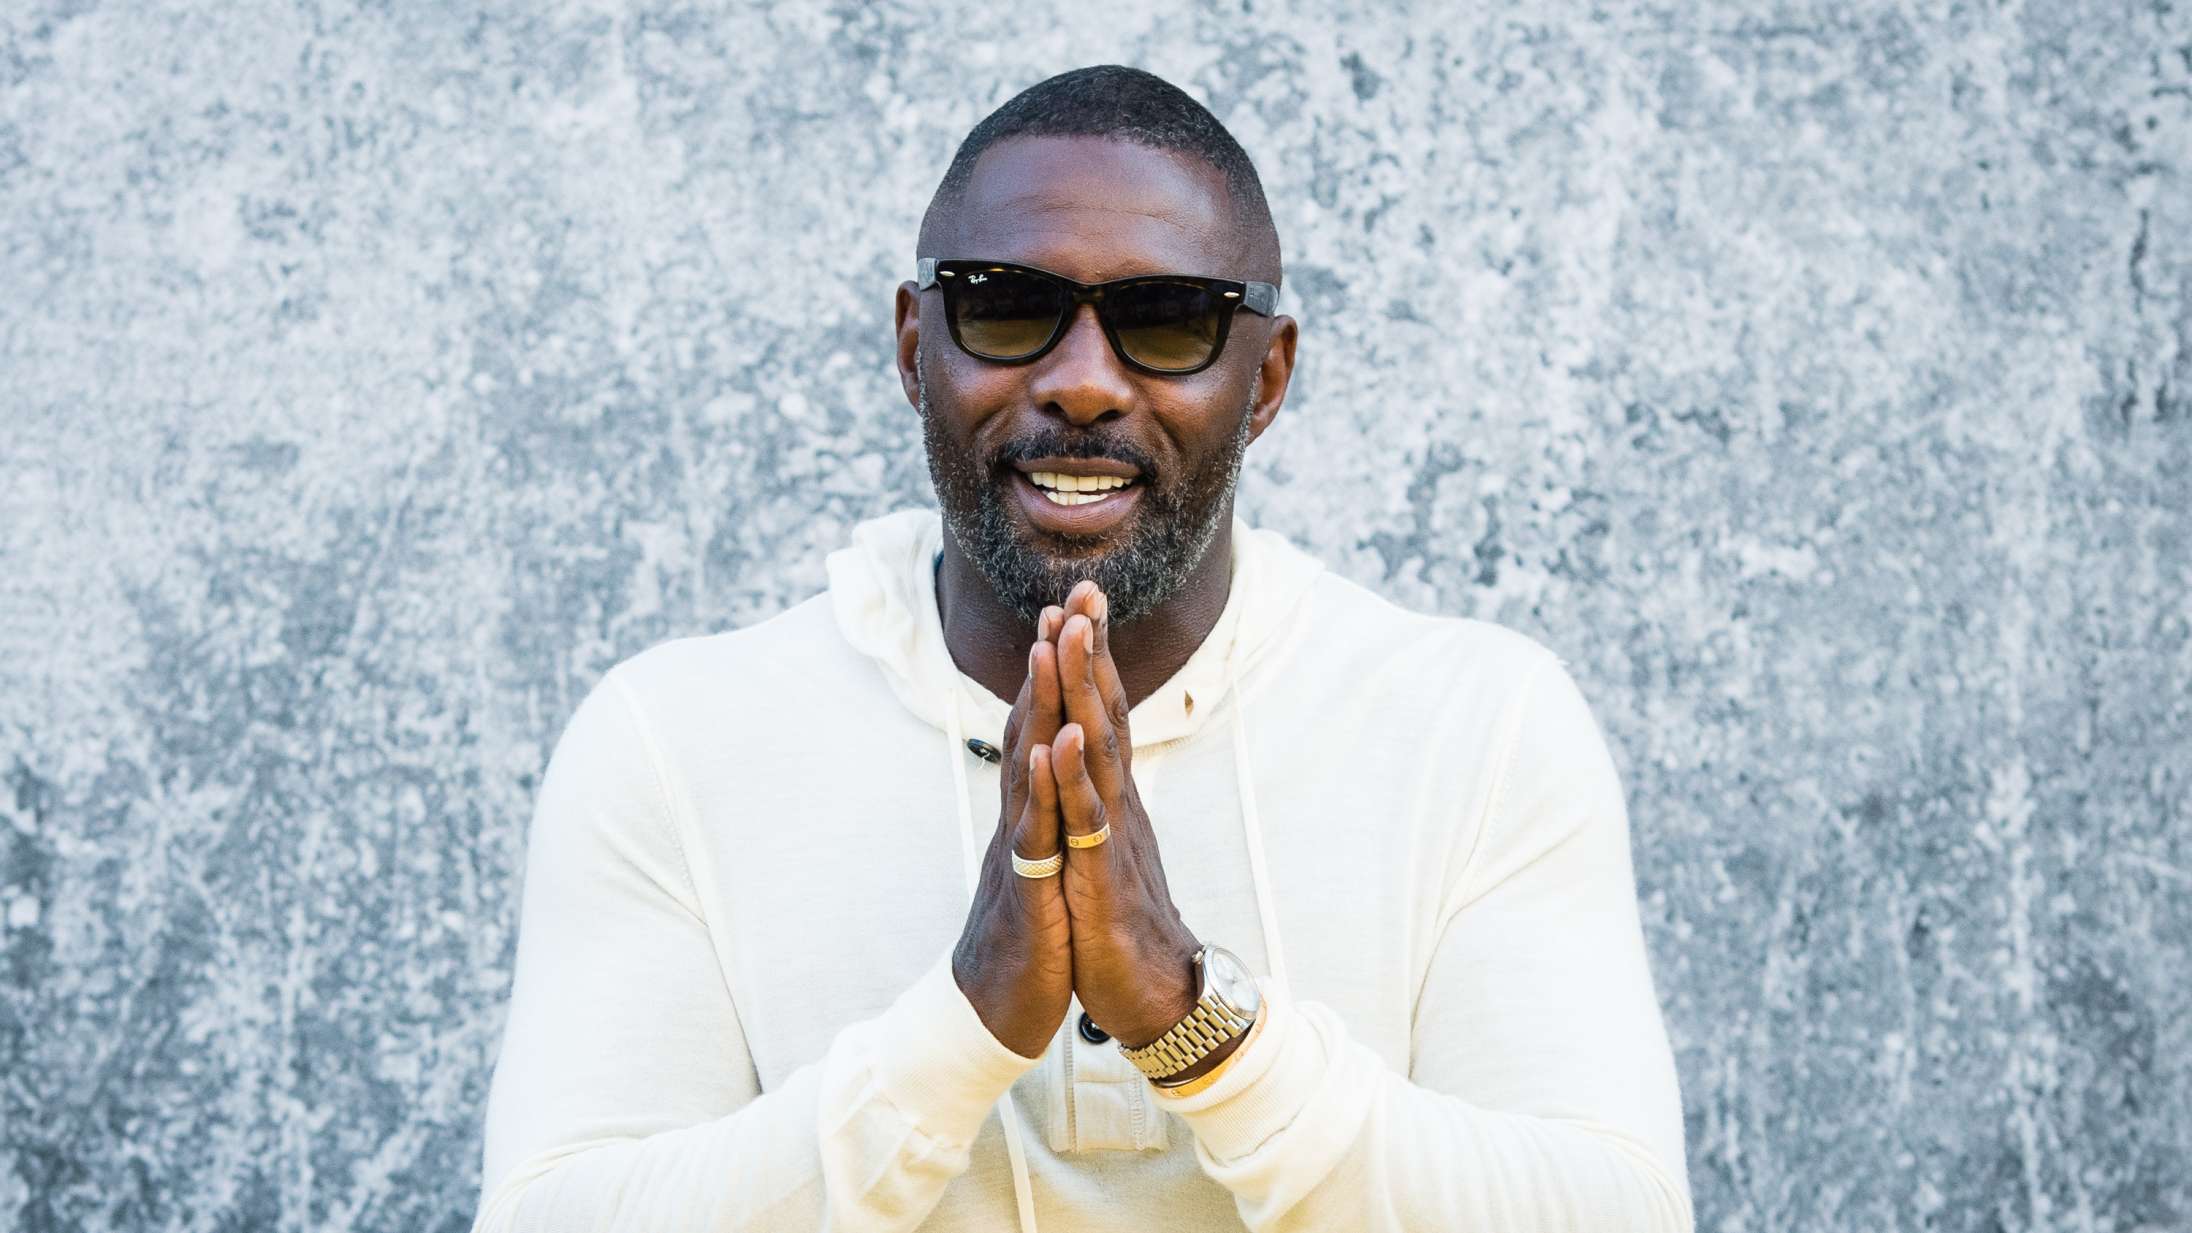 2022 er året, hvor Idris Elba træder tilbage fra skuespillet til fordel for musikken – er det nu en god idé?